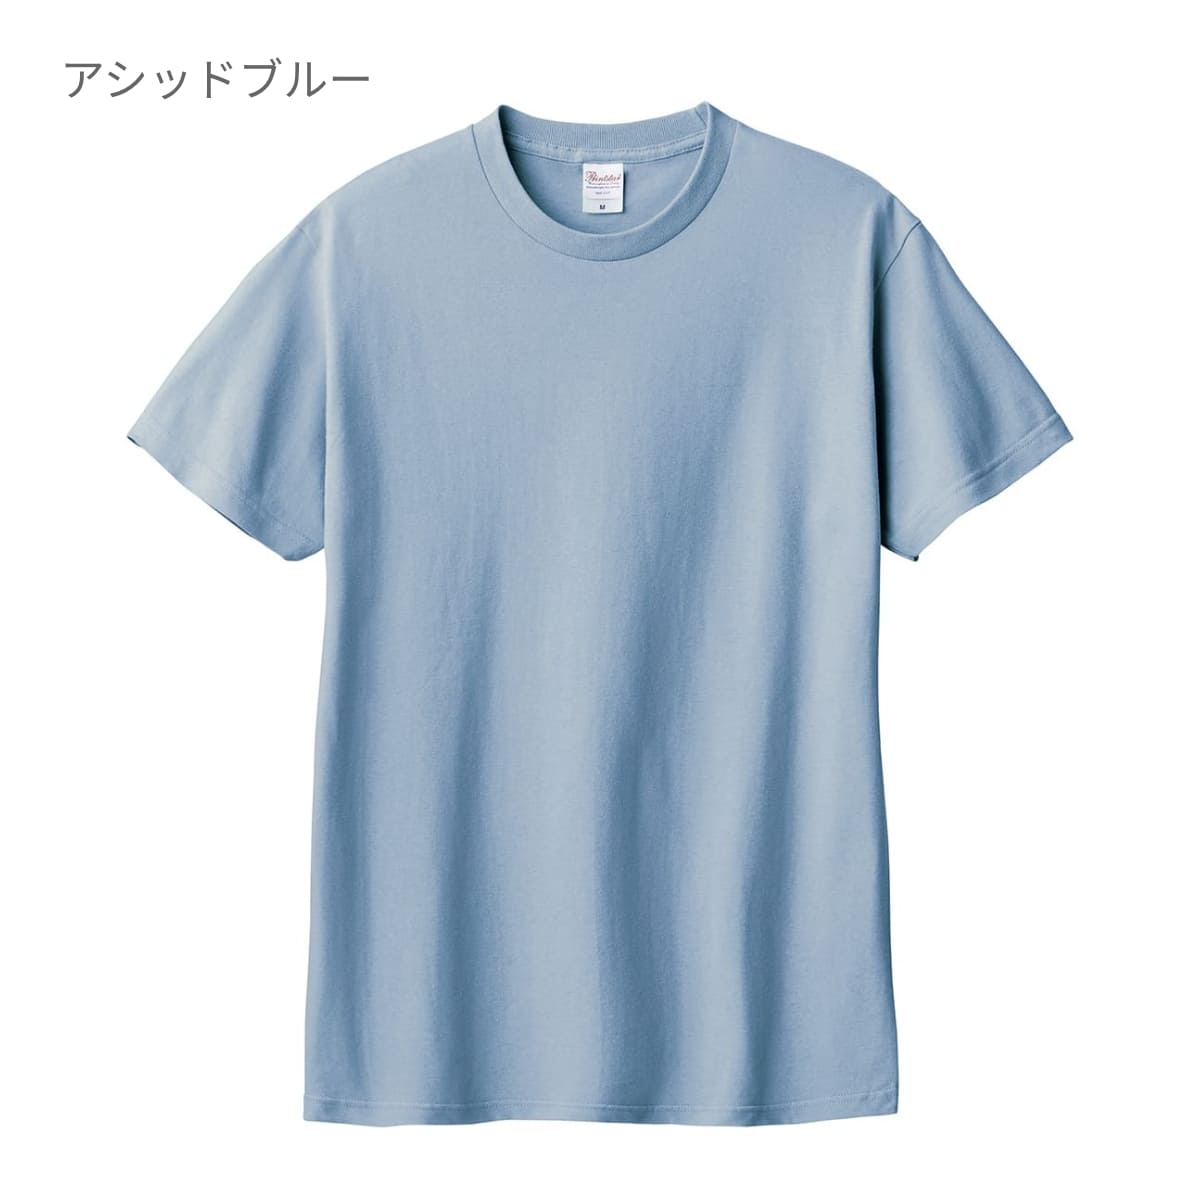 激安売値【23年新作】F.C.R.B. 吸水速乾 Tシャツ…XLサイズ…ベージュカラー トップス